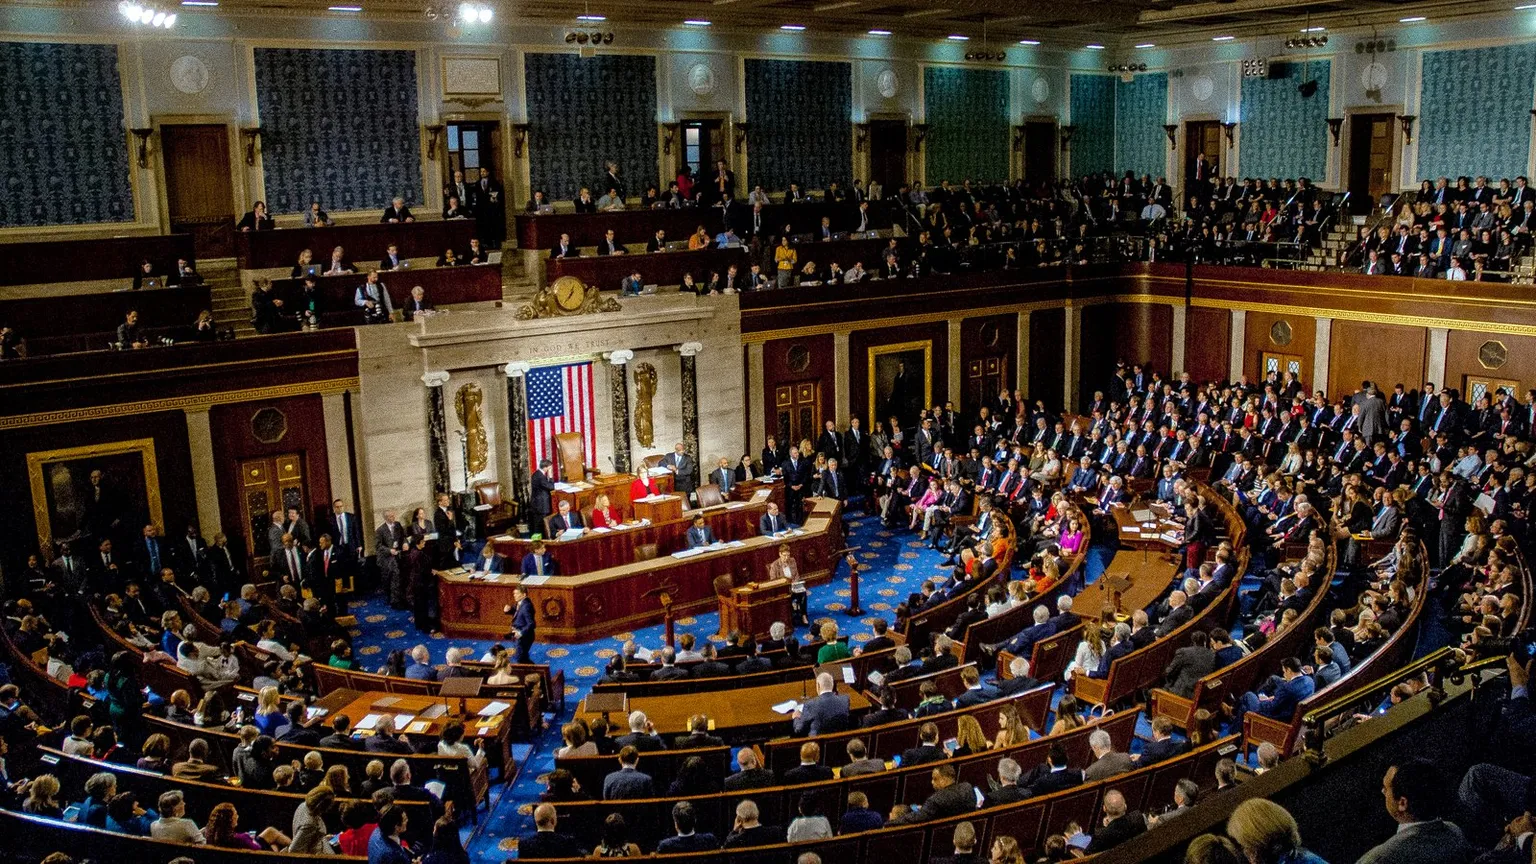 El Senado de los Estados Unidos es la cámara alta del Congreso estadounidense. Imagen: Shutterstock